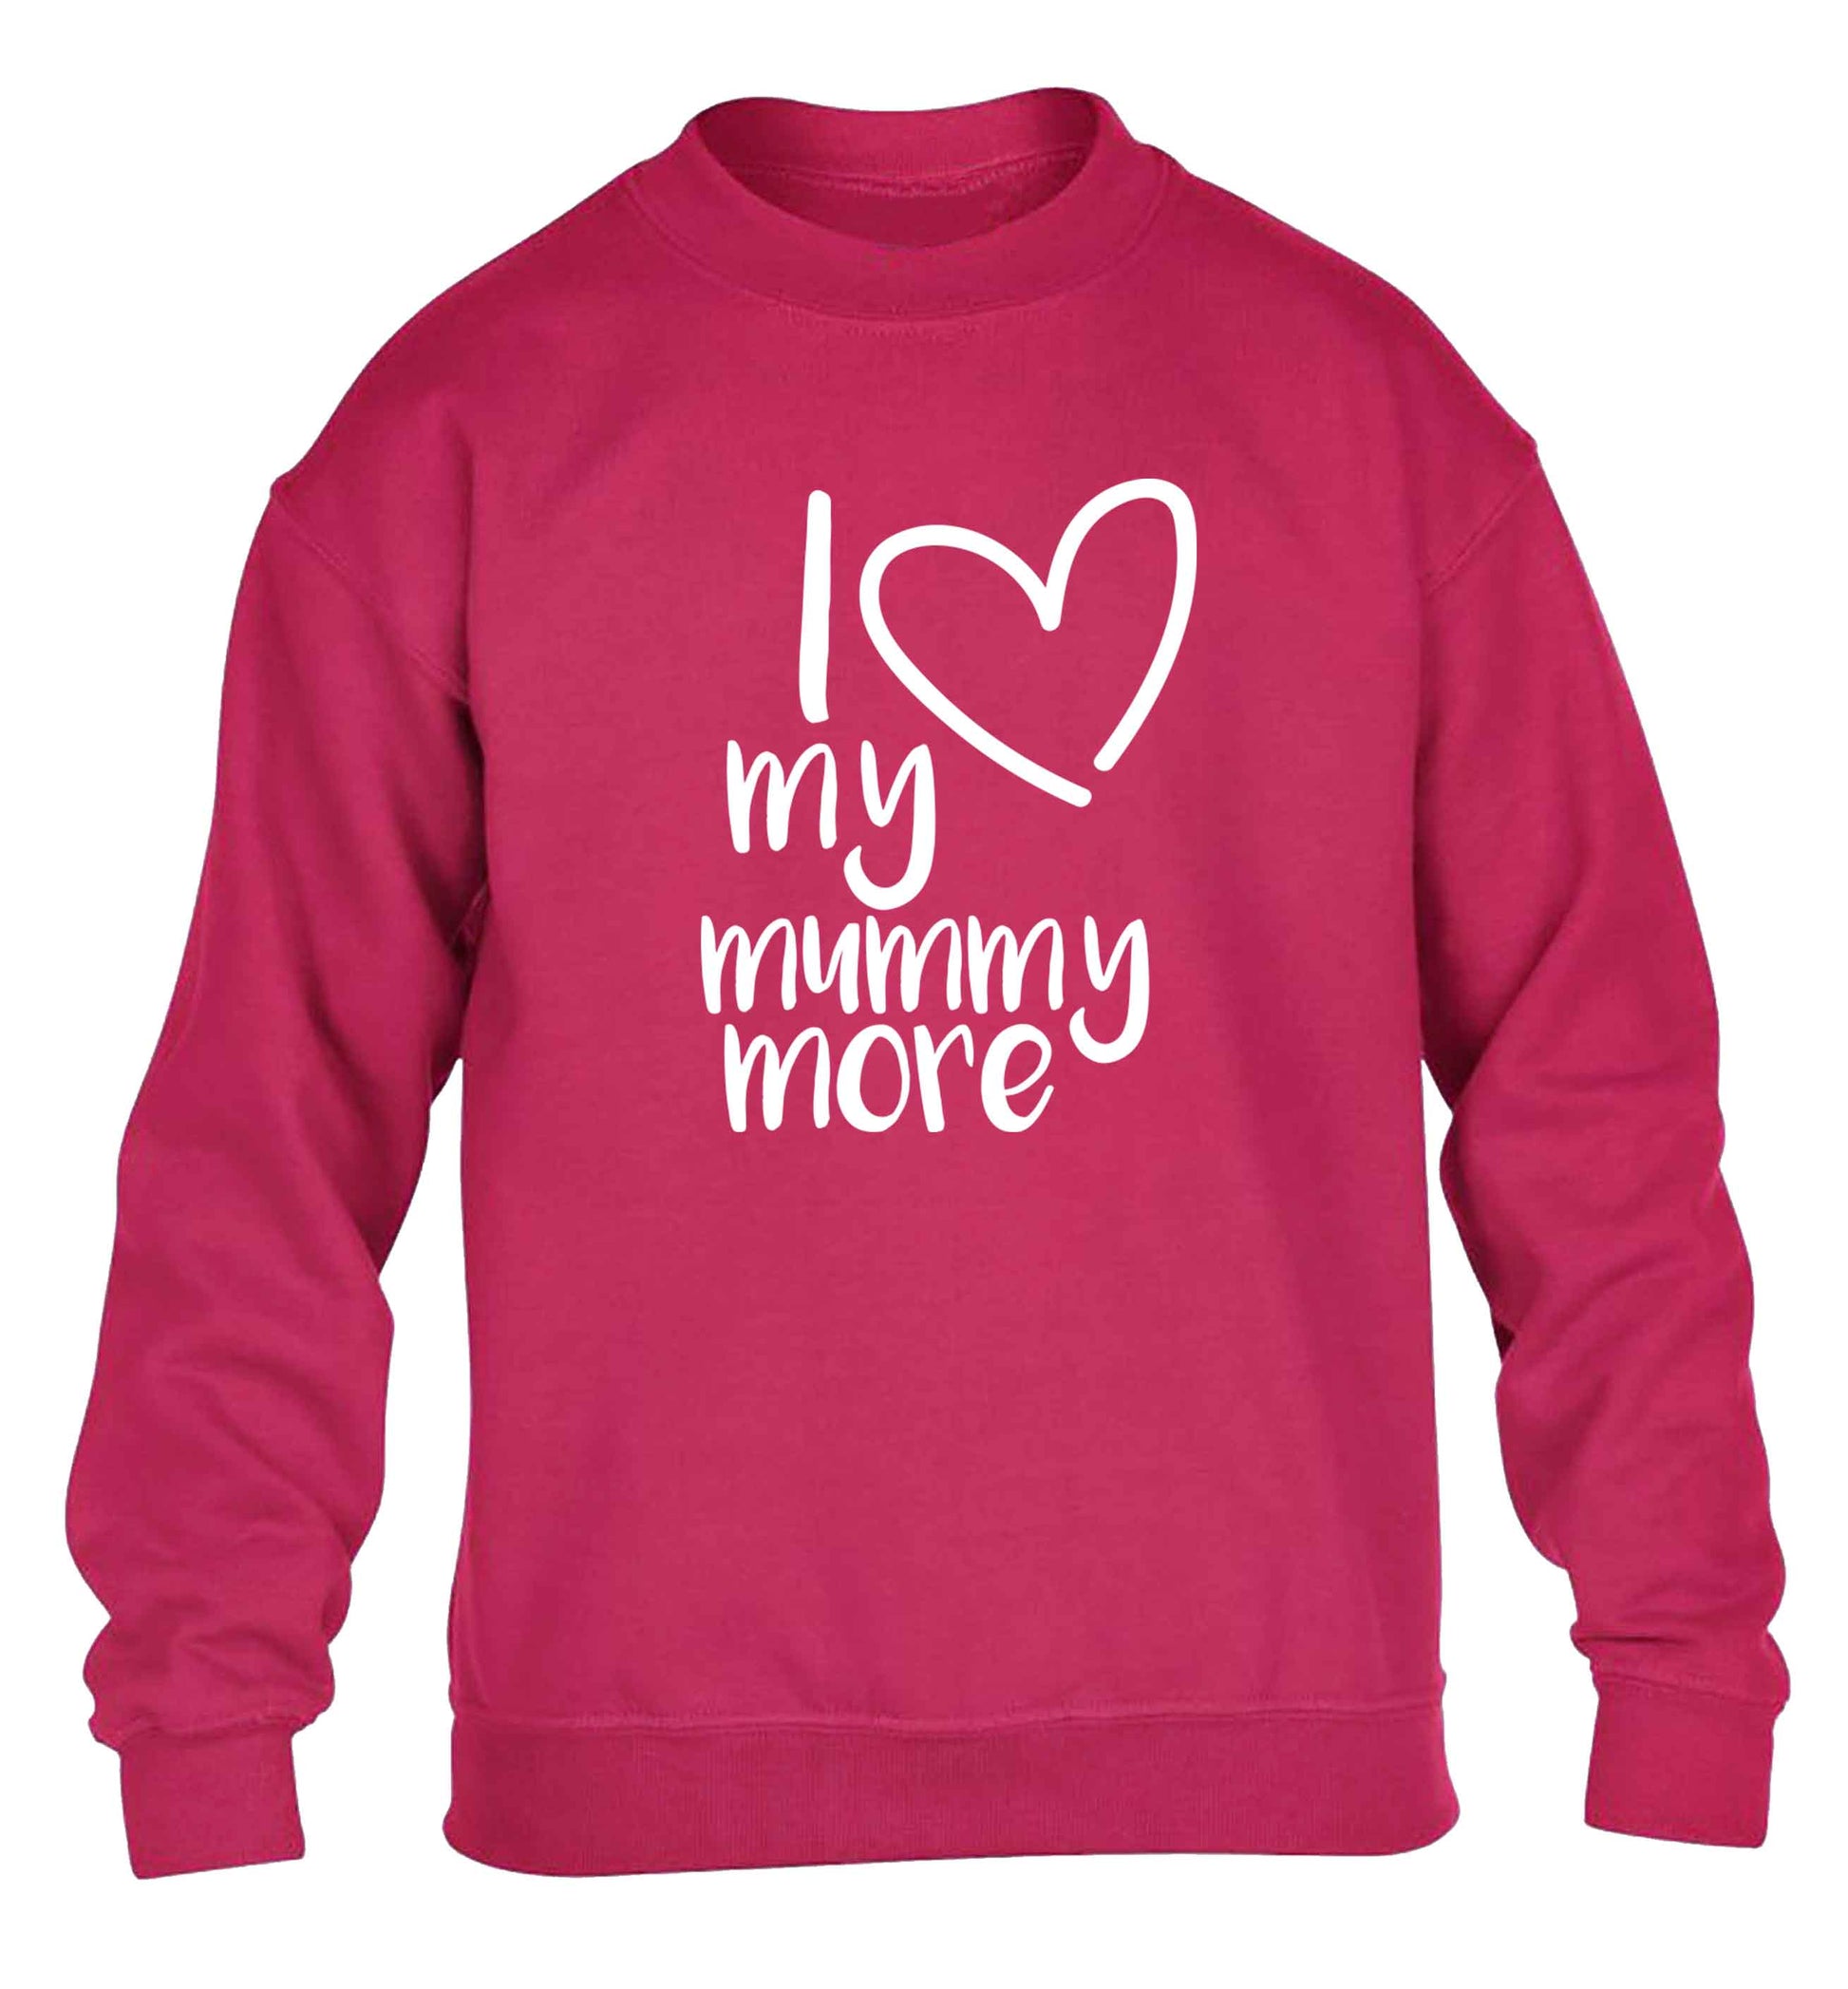 I love my mummy more children's pink sweater 12-13 Years